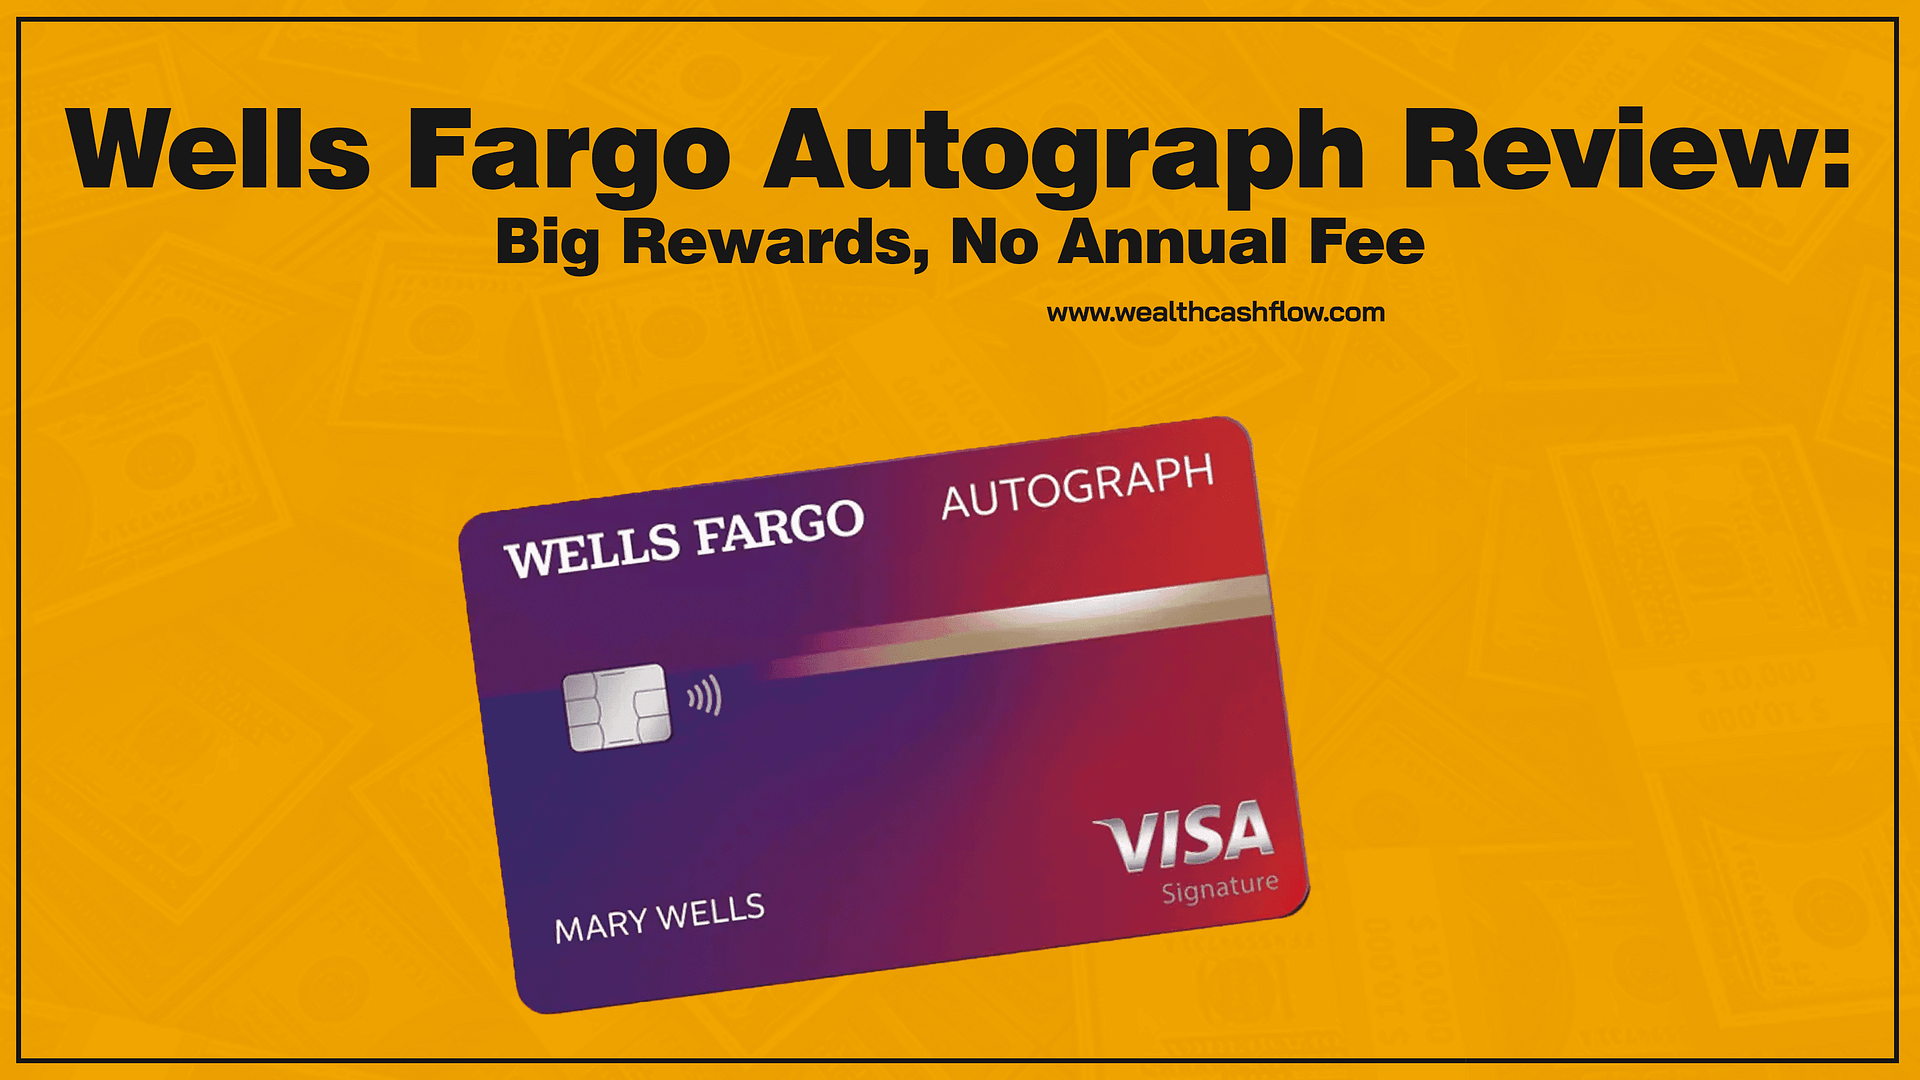 Wells Fargo Autograph Review : Big Rewards, No Annual Fee